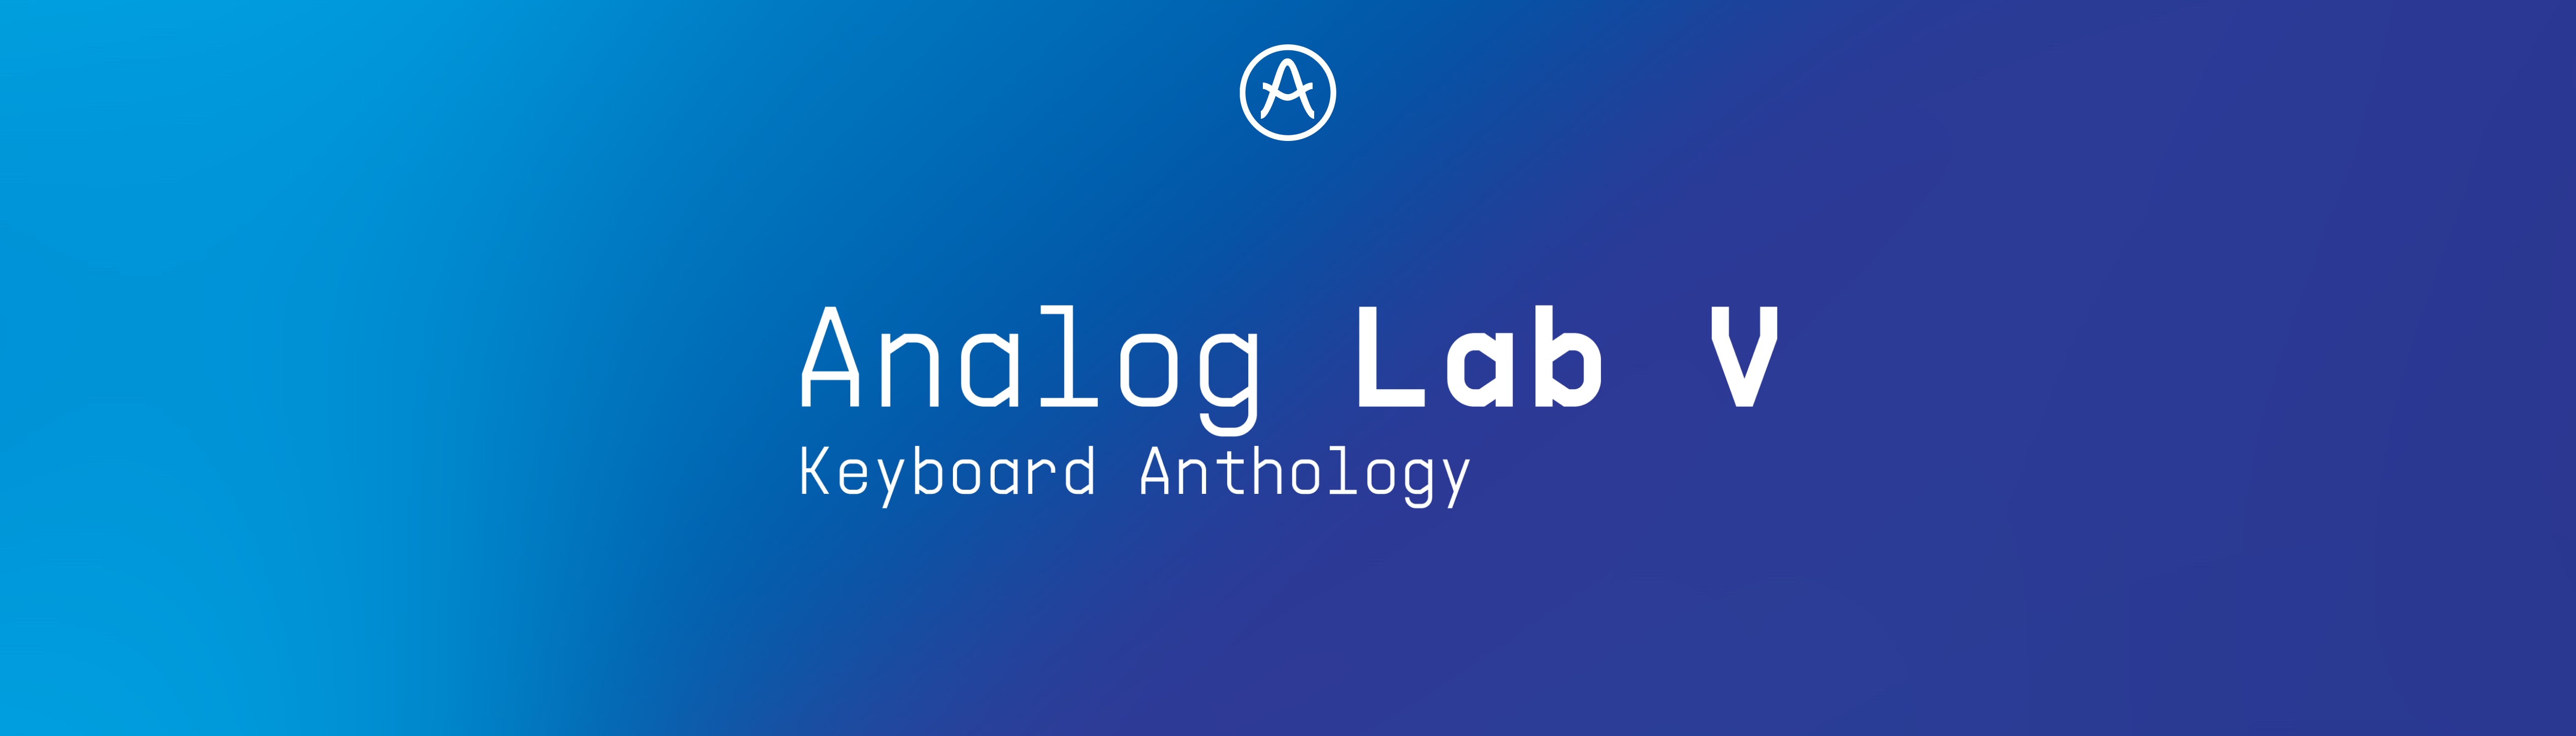 Arturia Analog lab V for ios download free